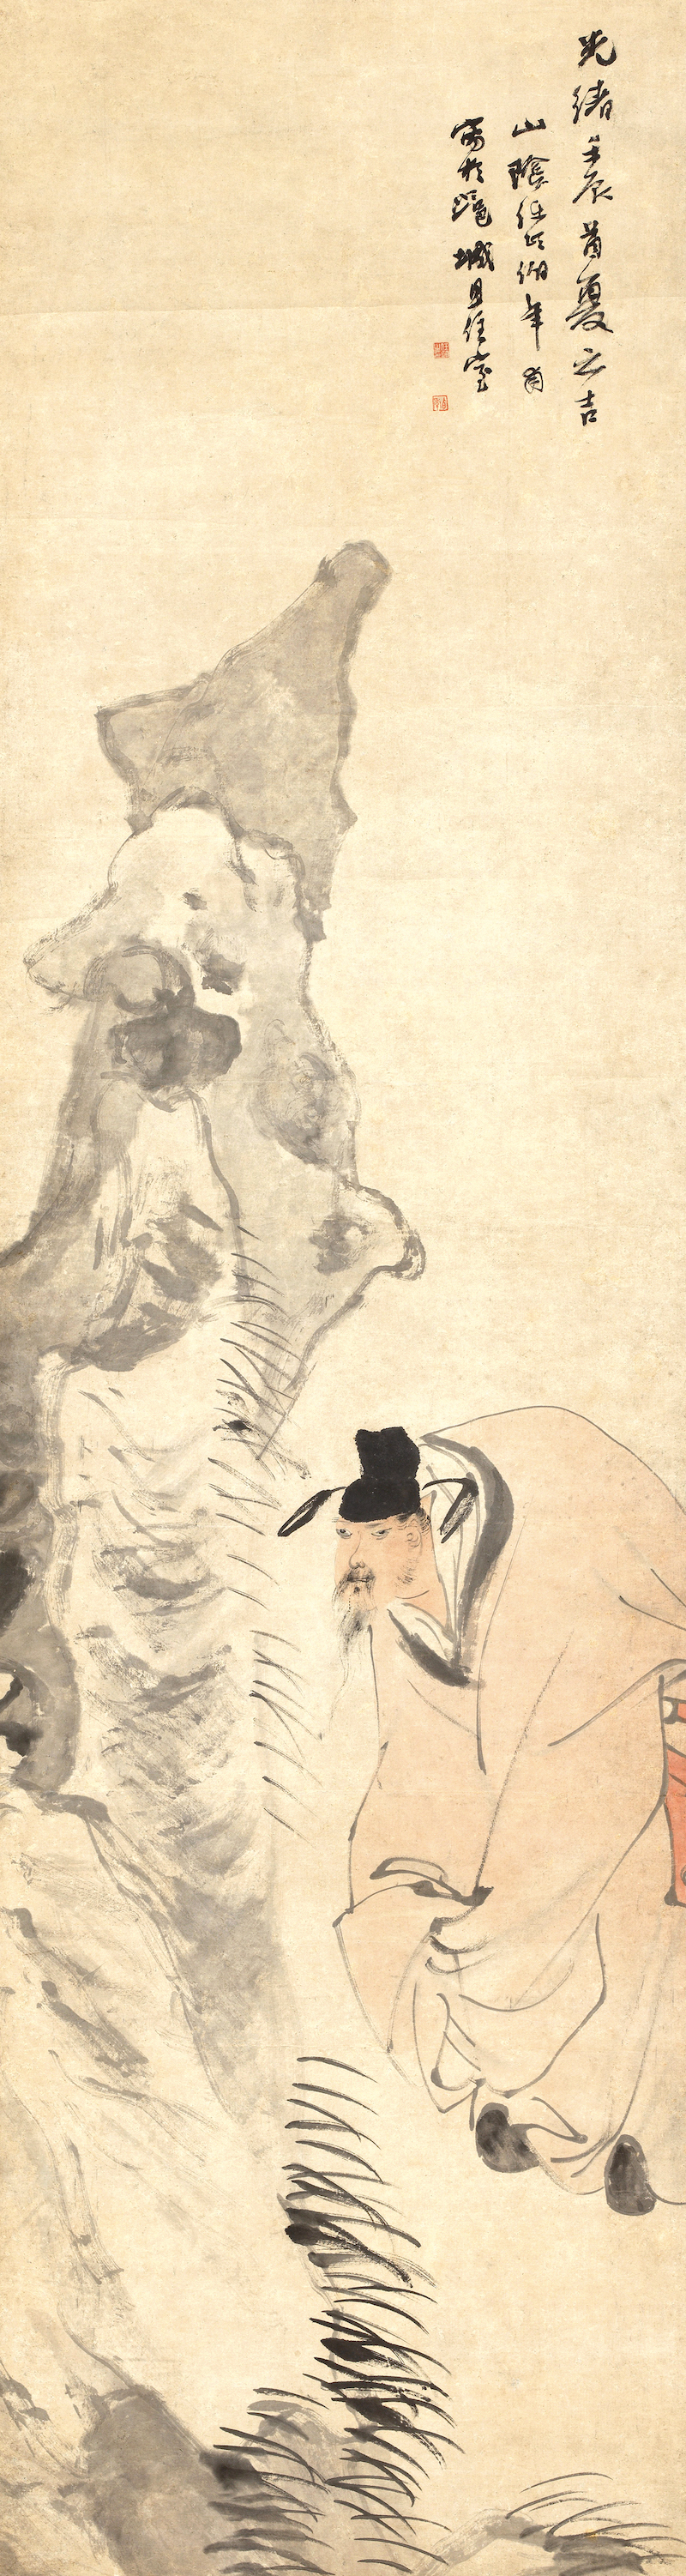 任伯年《米癫拜石图》轴 1892年 纸本设色 纵167.5厘米 横45厘米 中央美术学院美术馆藏